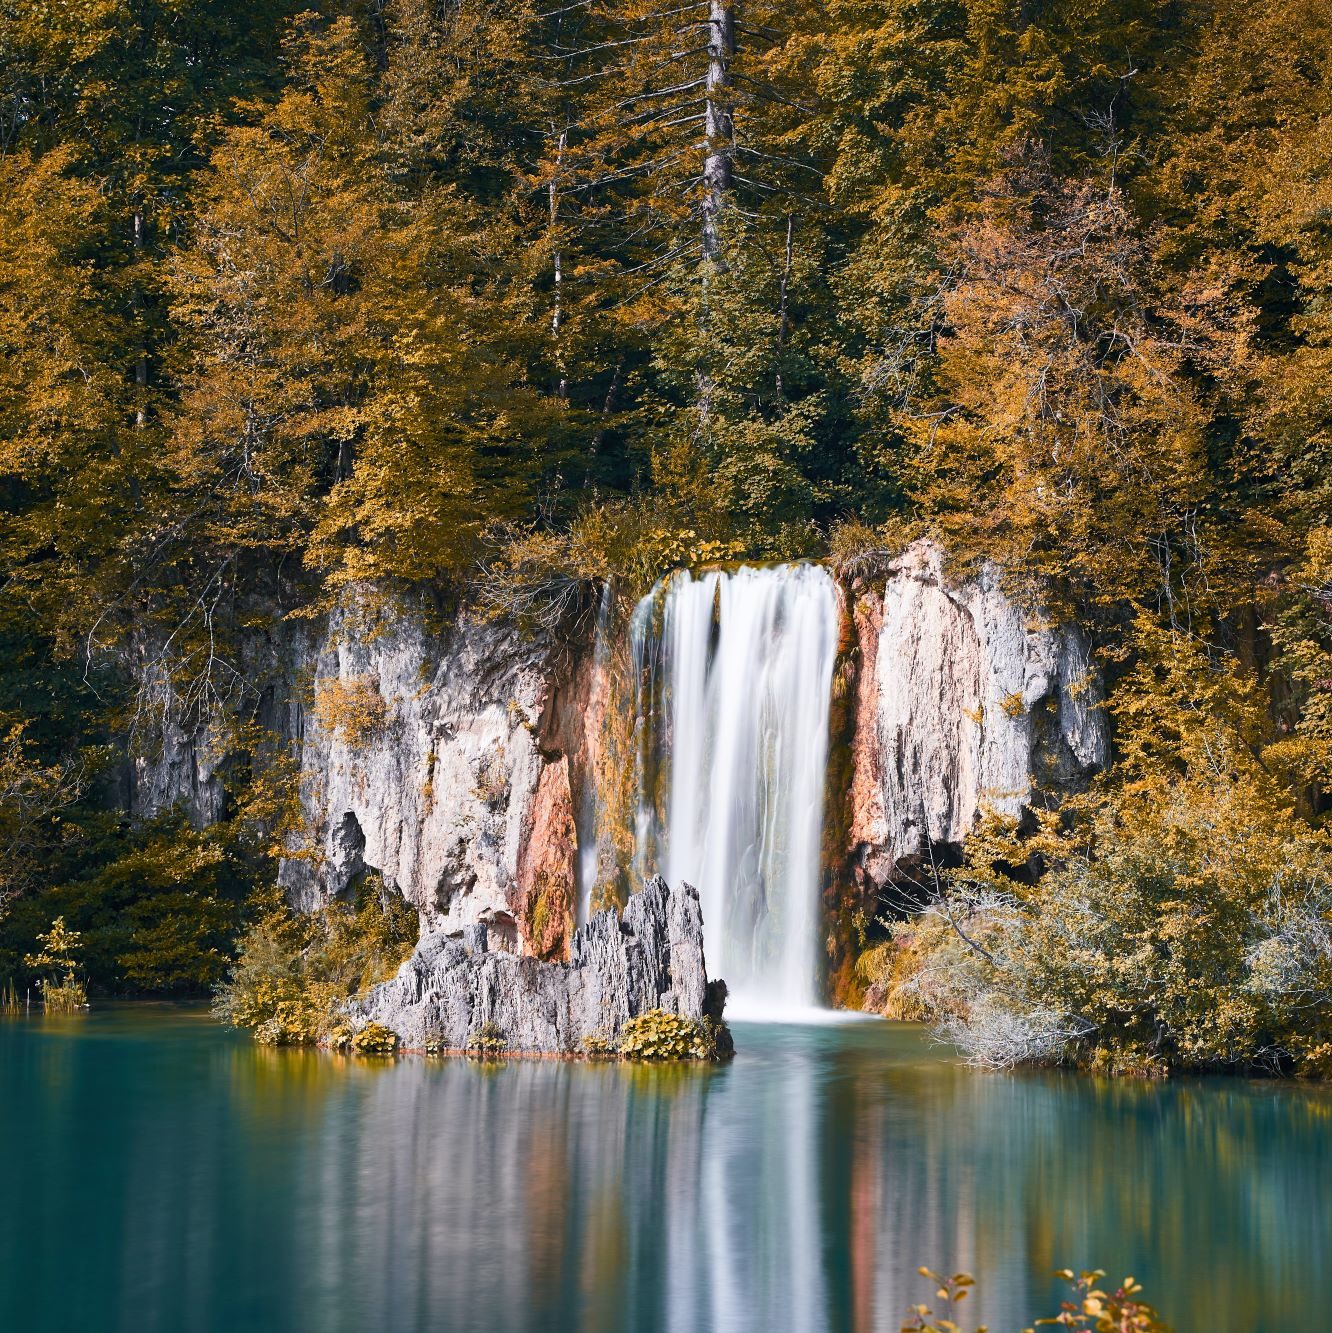 Wasserfall und See in einem herbstlichen Wald